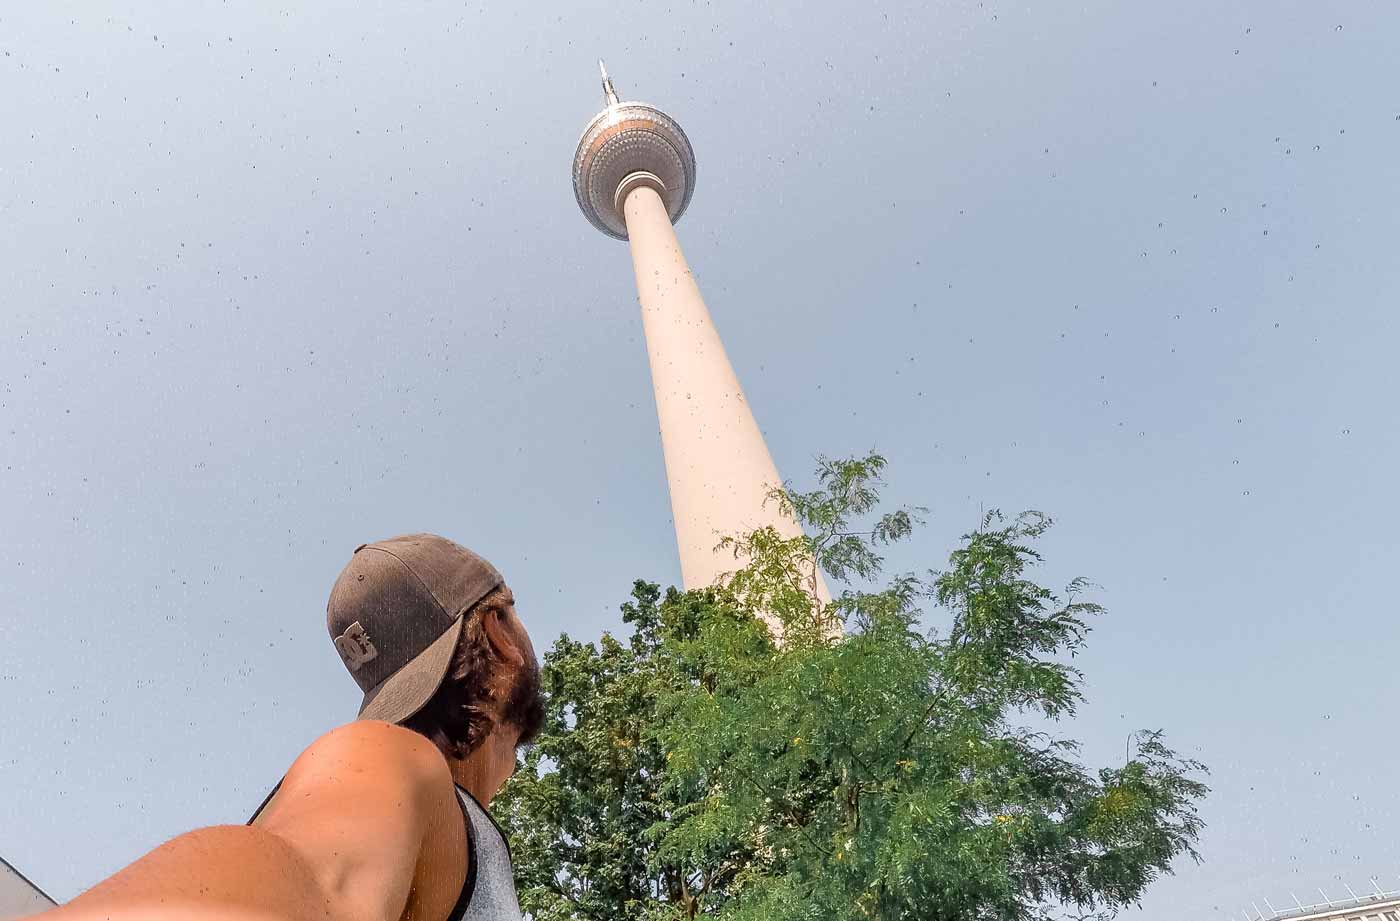 Torre de Tv de Berlim é um ponto turístico de Berlim